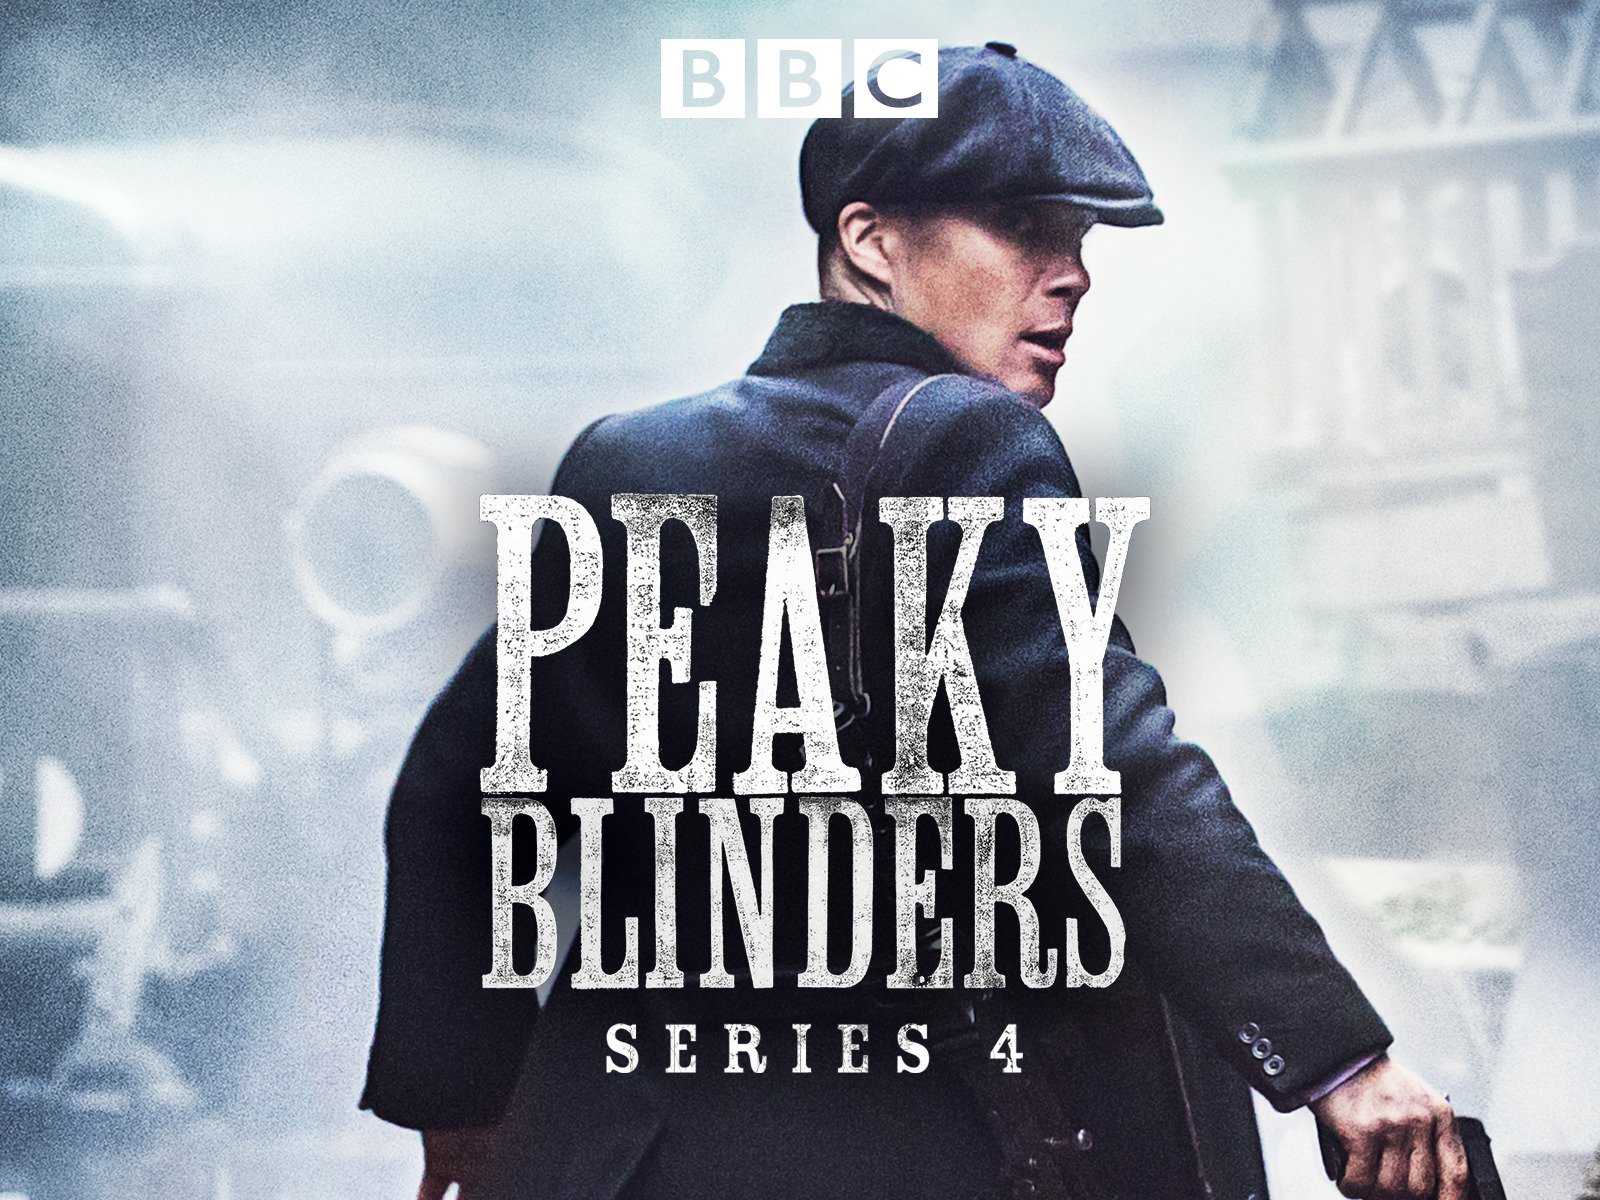 watch peaky blinders season 4 episode 4 online free